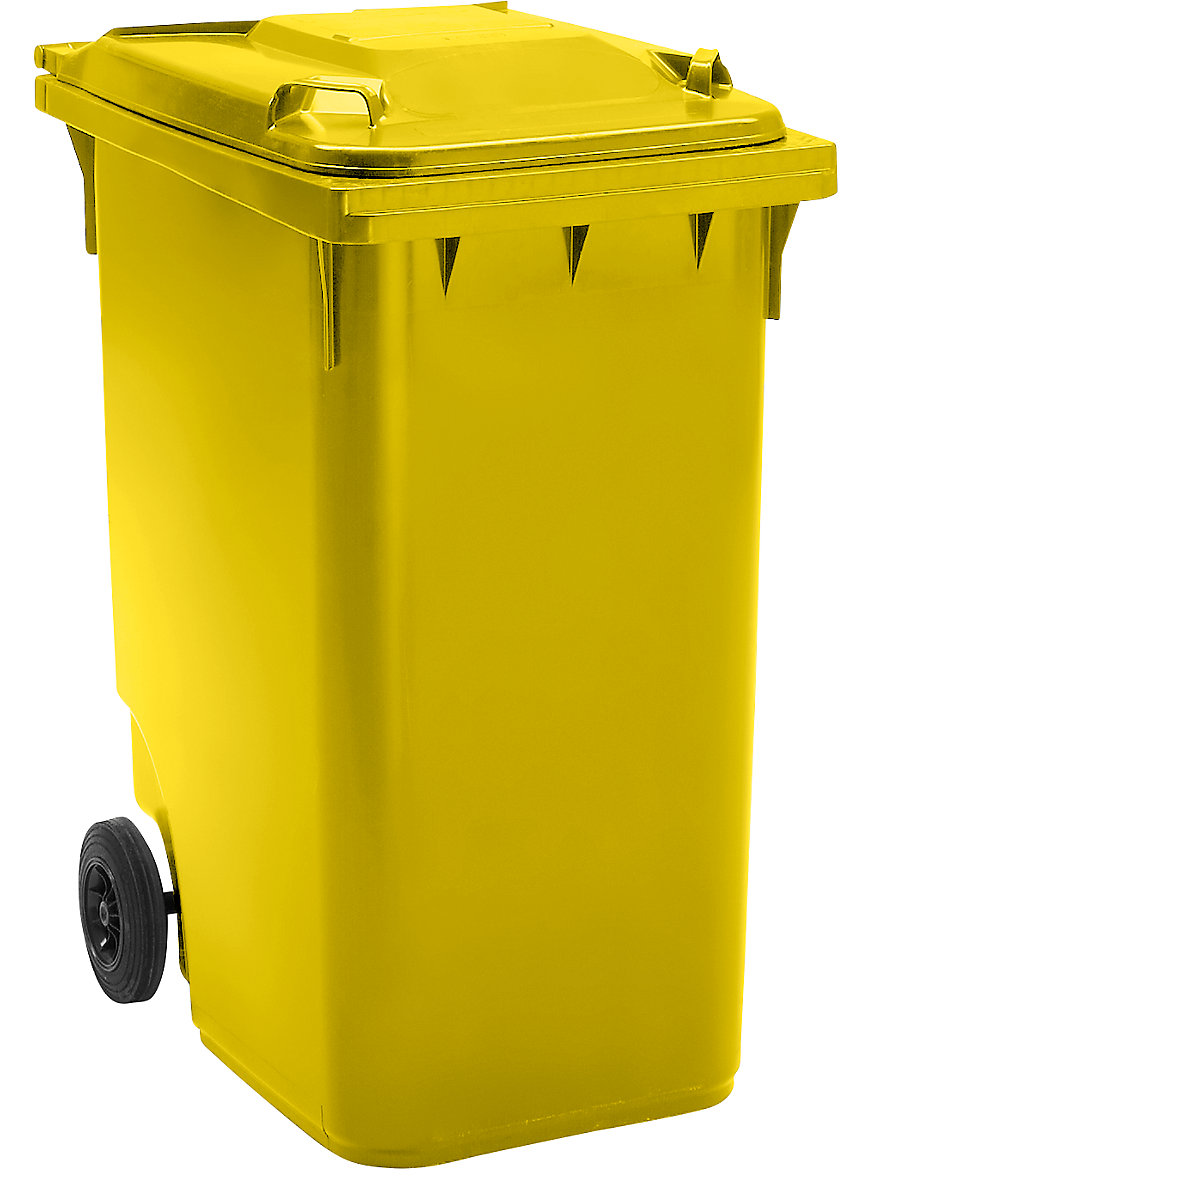 Pojemnik na odpady, z tworzywa, DIN EN 840, poj. 360 l, wys. x szer. x głęb. 665 x 1115 x 880 mm, Ø kółka 200 mm, żółte, dostawa od 5 szt.-6